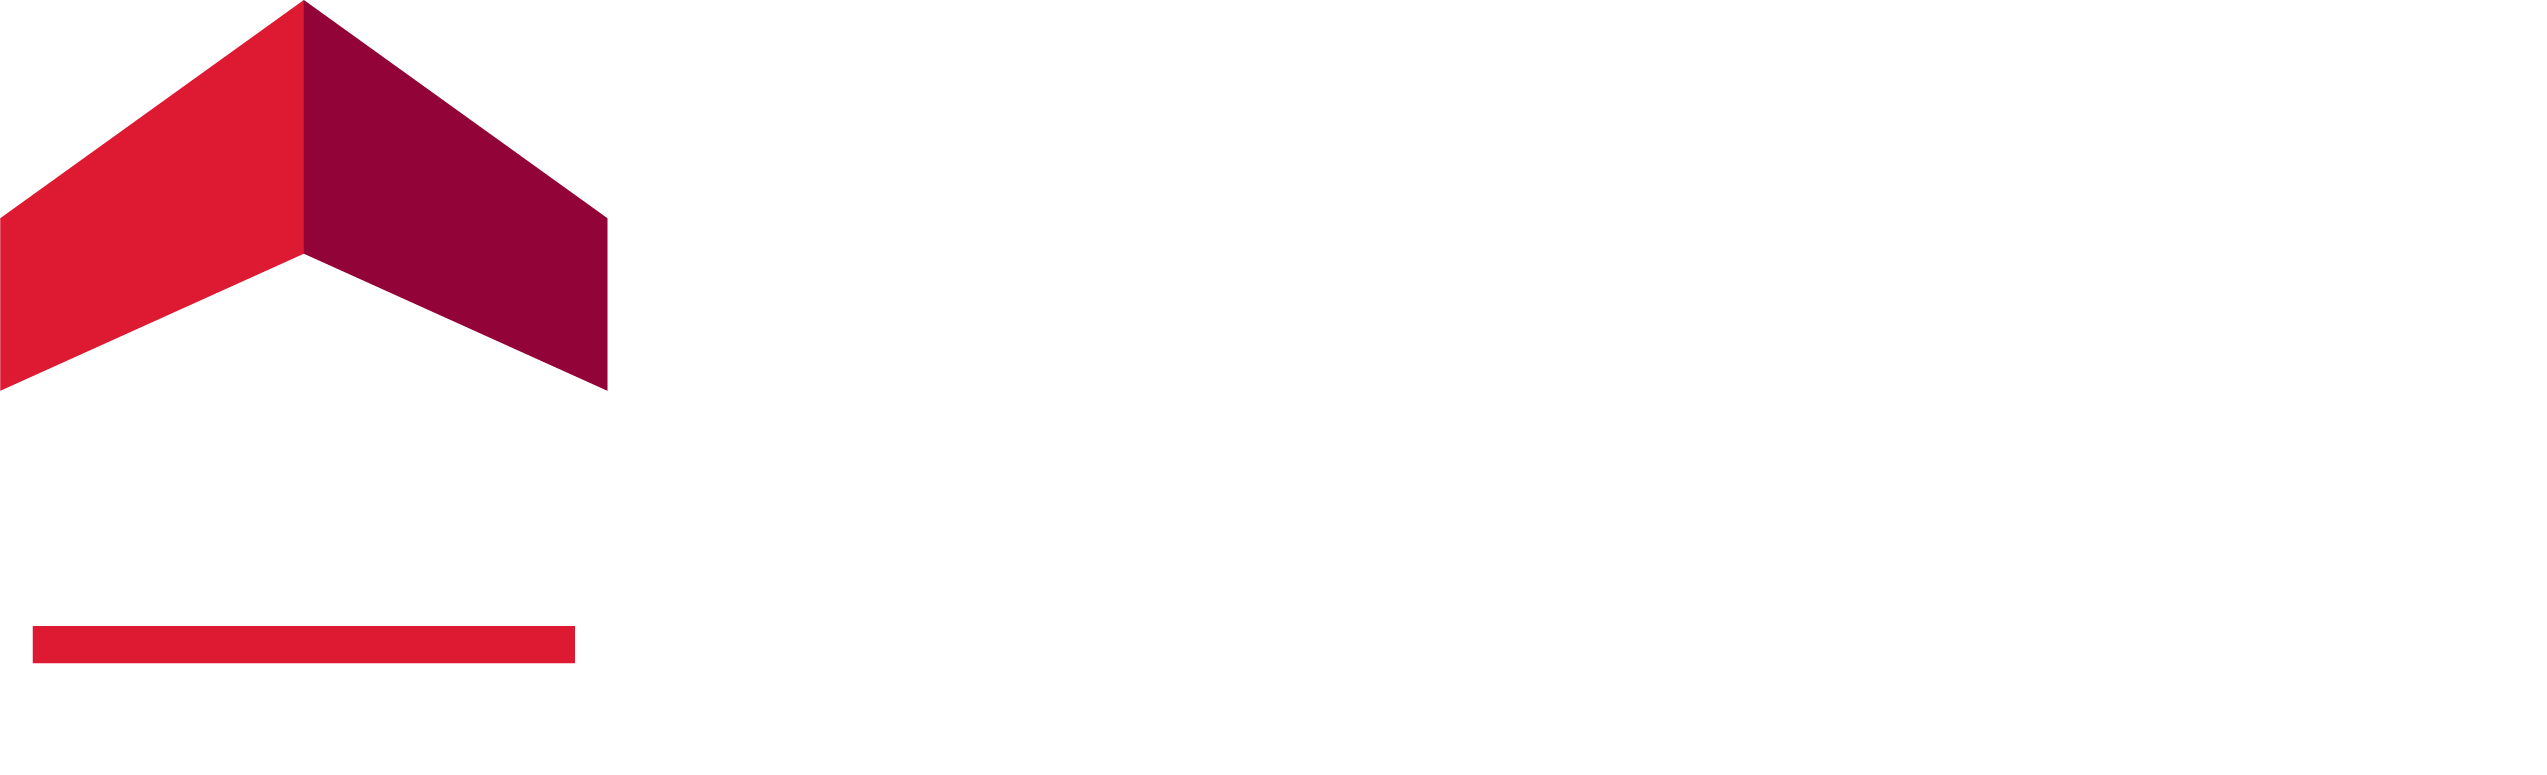 ERA Landmark Real Estate reverse